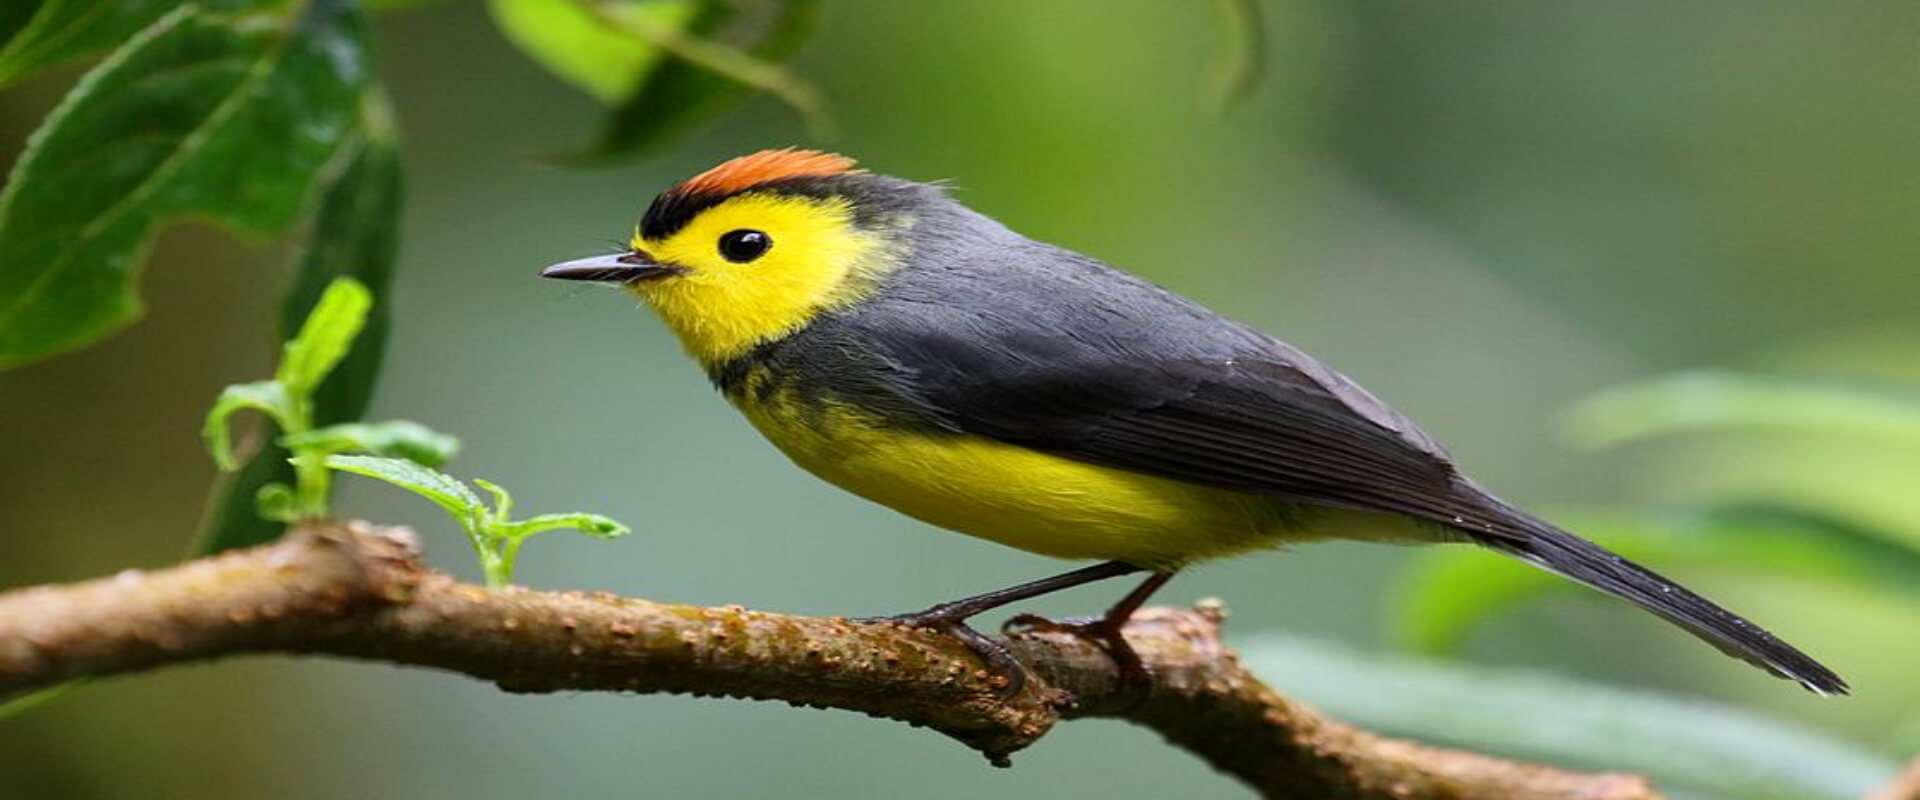 Observación de aves en la Reserva Biológica Bosque Nuboso Monteverde | Costa Rica Jade Tours